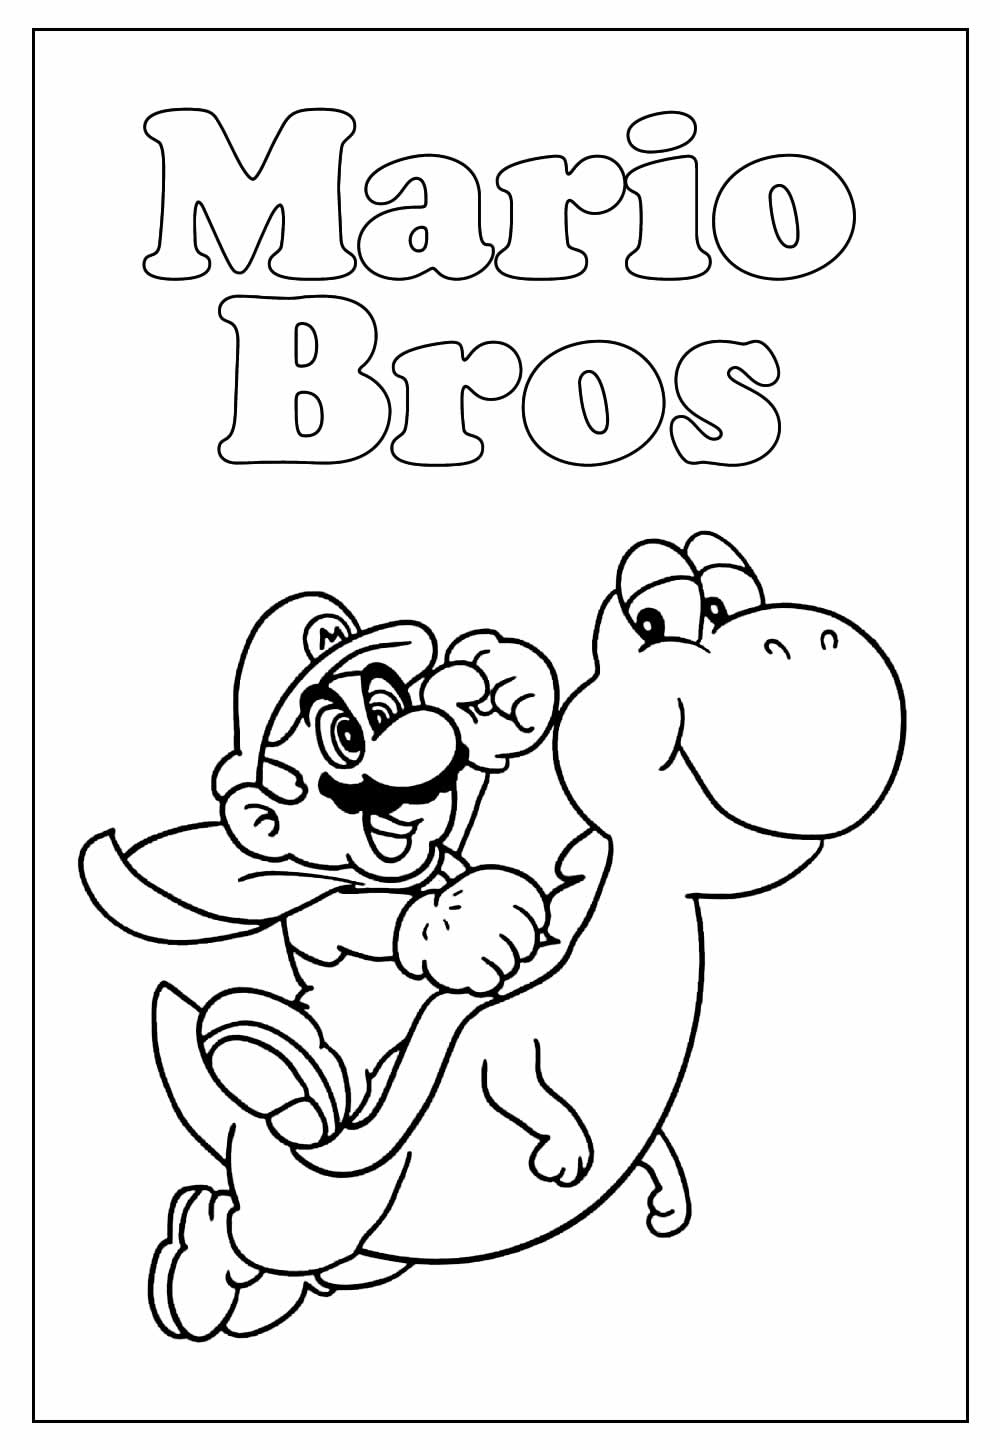 Desenho de Mario Bros para colorir